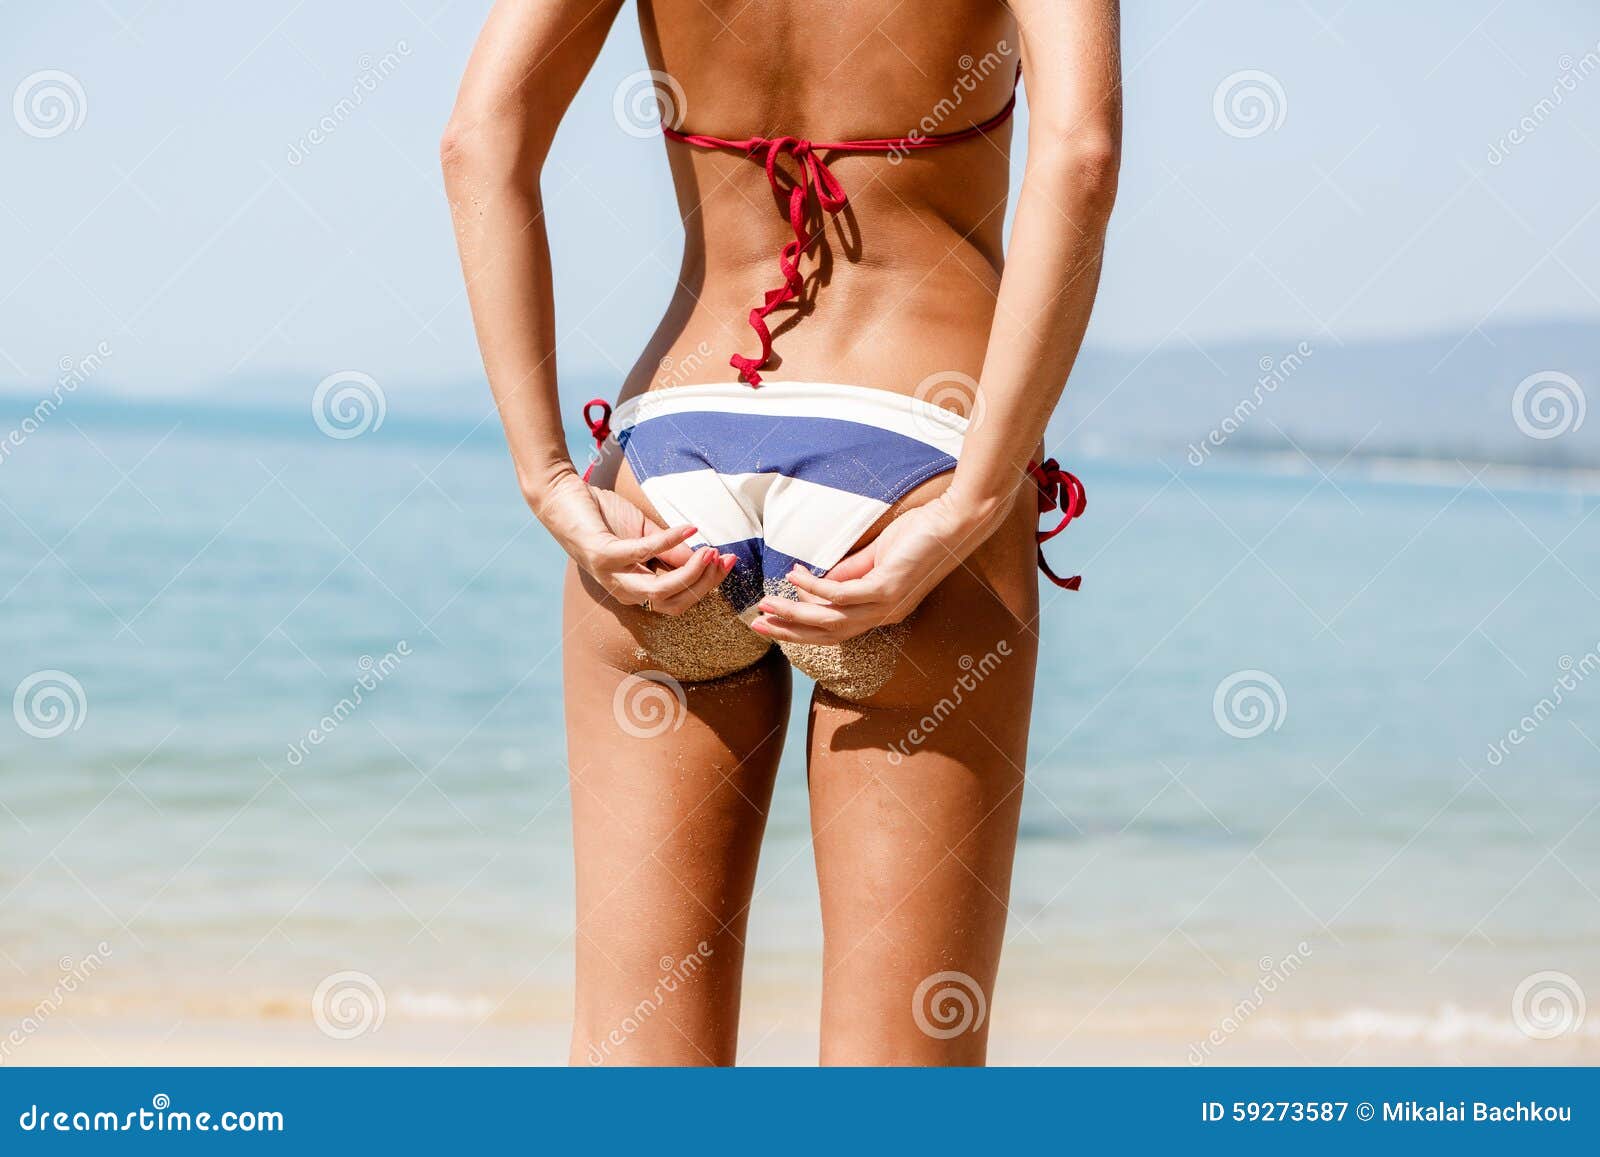 Sexy Sandige Frauenhinterteile Im Blauen Und Weißen Gestreiften Bikini Auf  Th Stockbild - Bild von schönheit, karosserie: 59273587